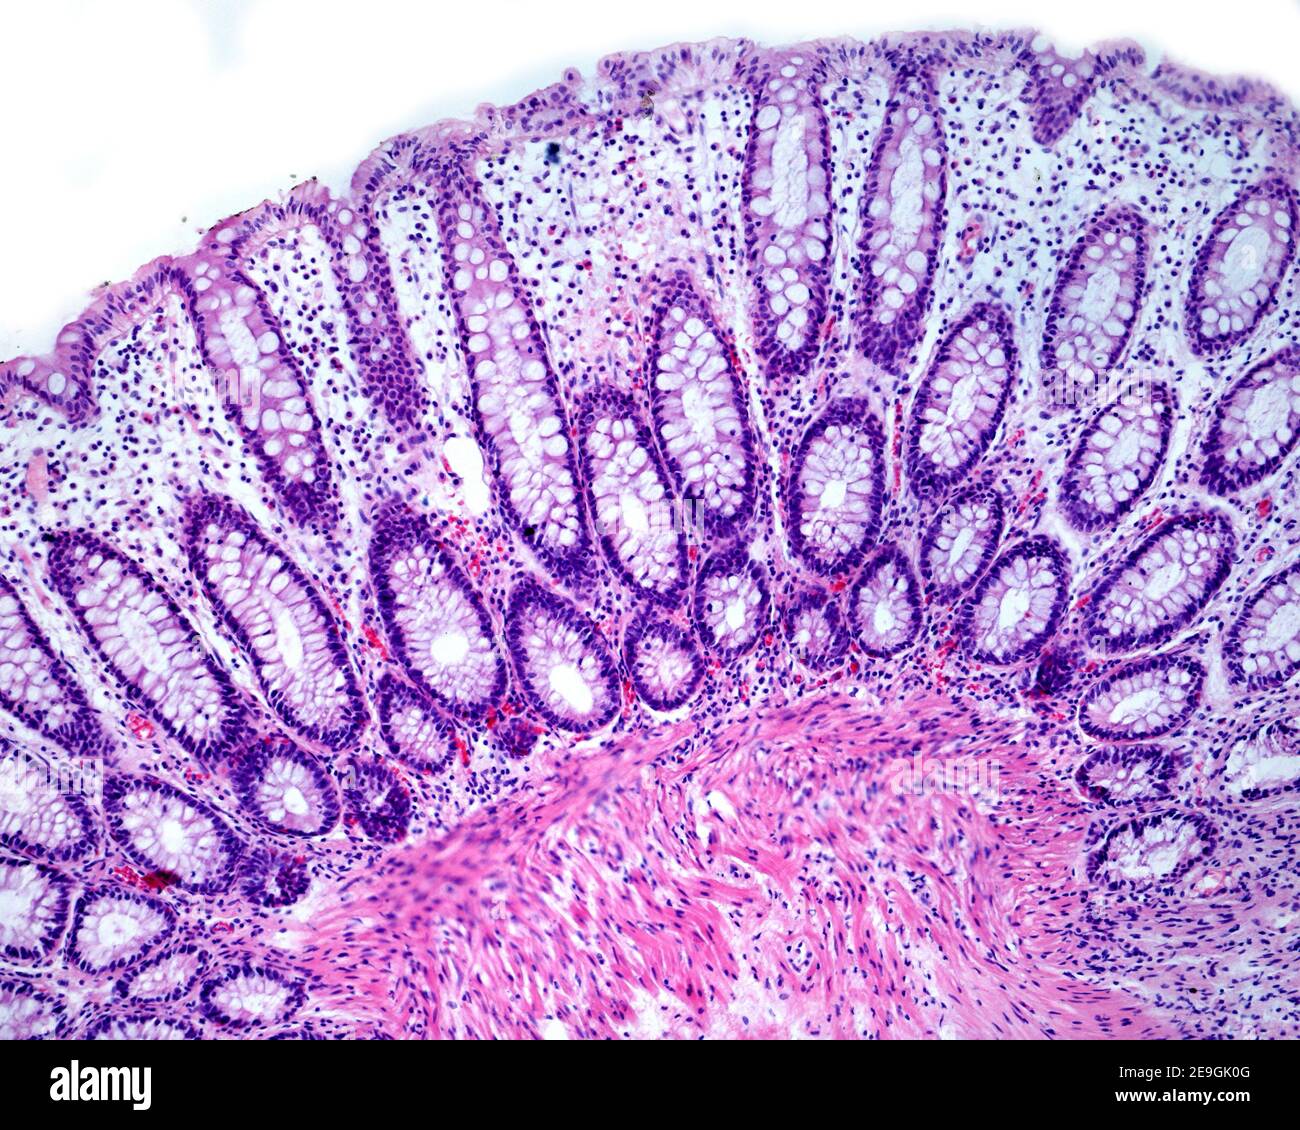 Lieberkühn crypte une muqueuse du côlon humaine présentant d'abondantes cellules de goblet de cytoplasme pâle. Banque D'Images